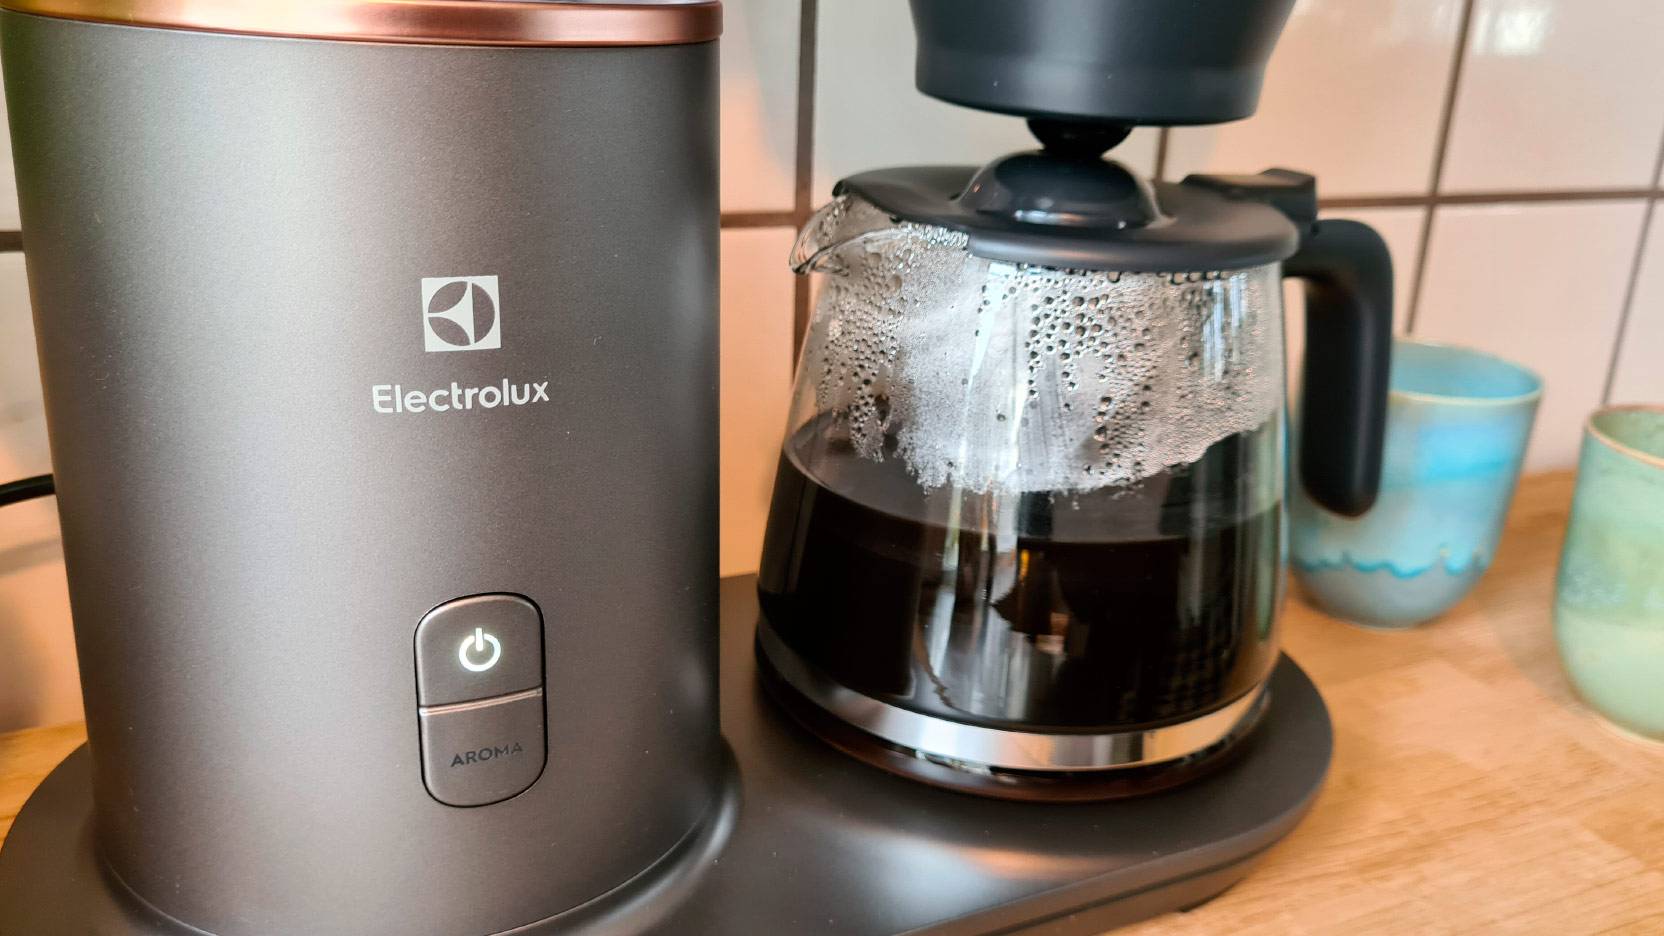 Billede af tænd og sluk knappen samt aromaknappen på Electrolux Explore 7 kaffemaskinen